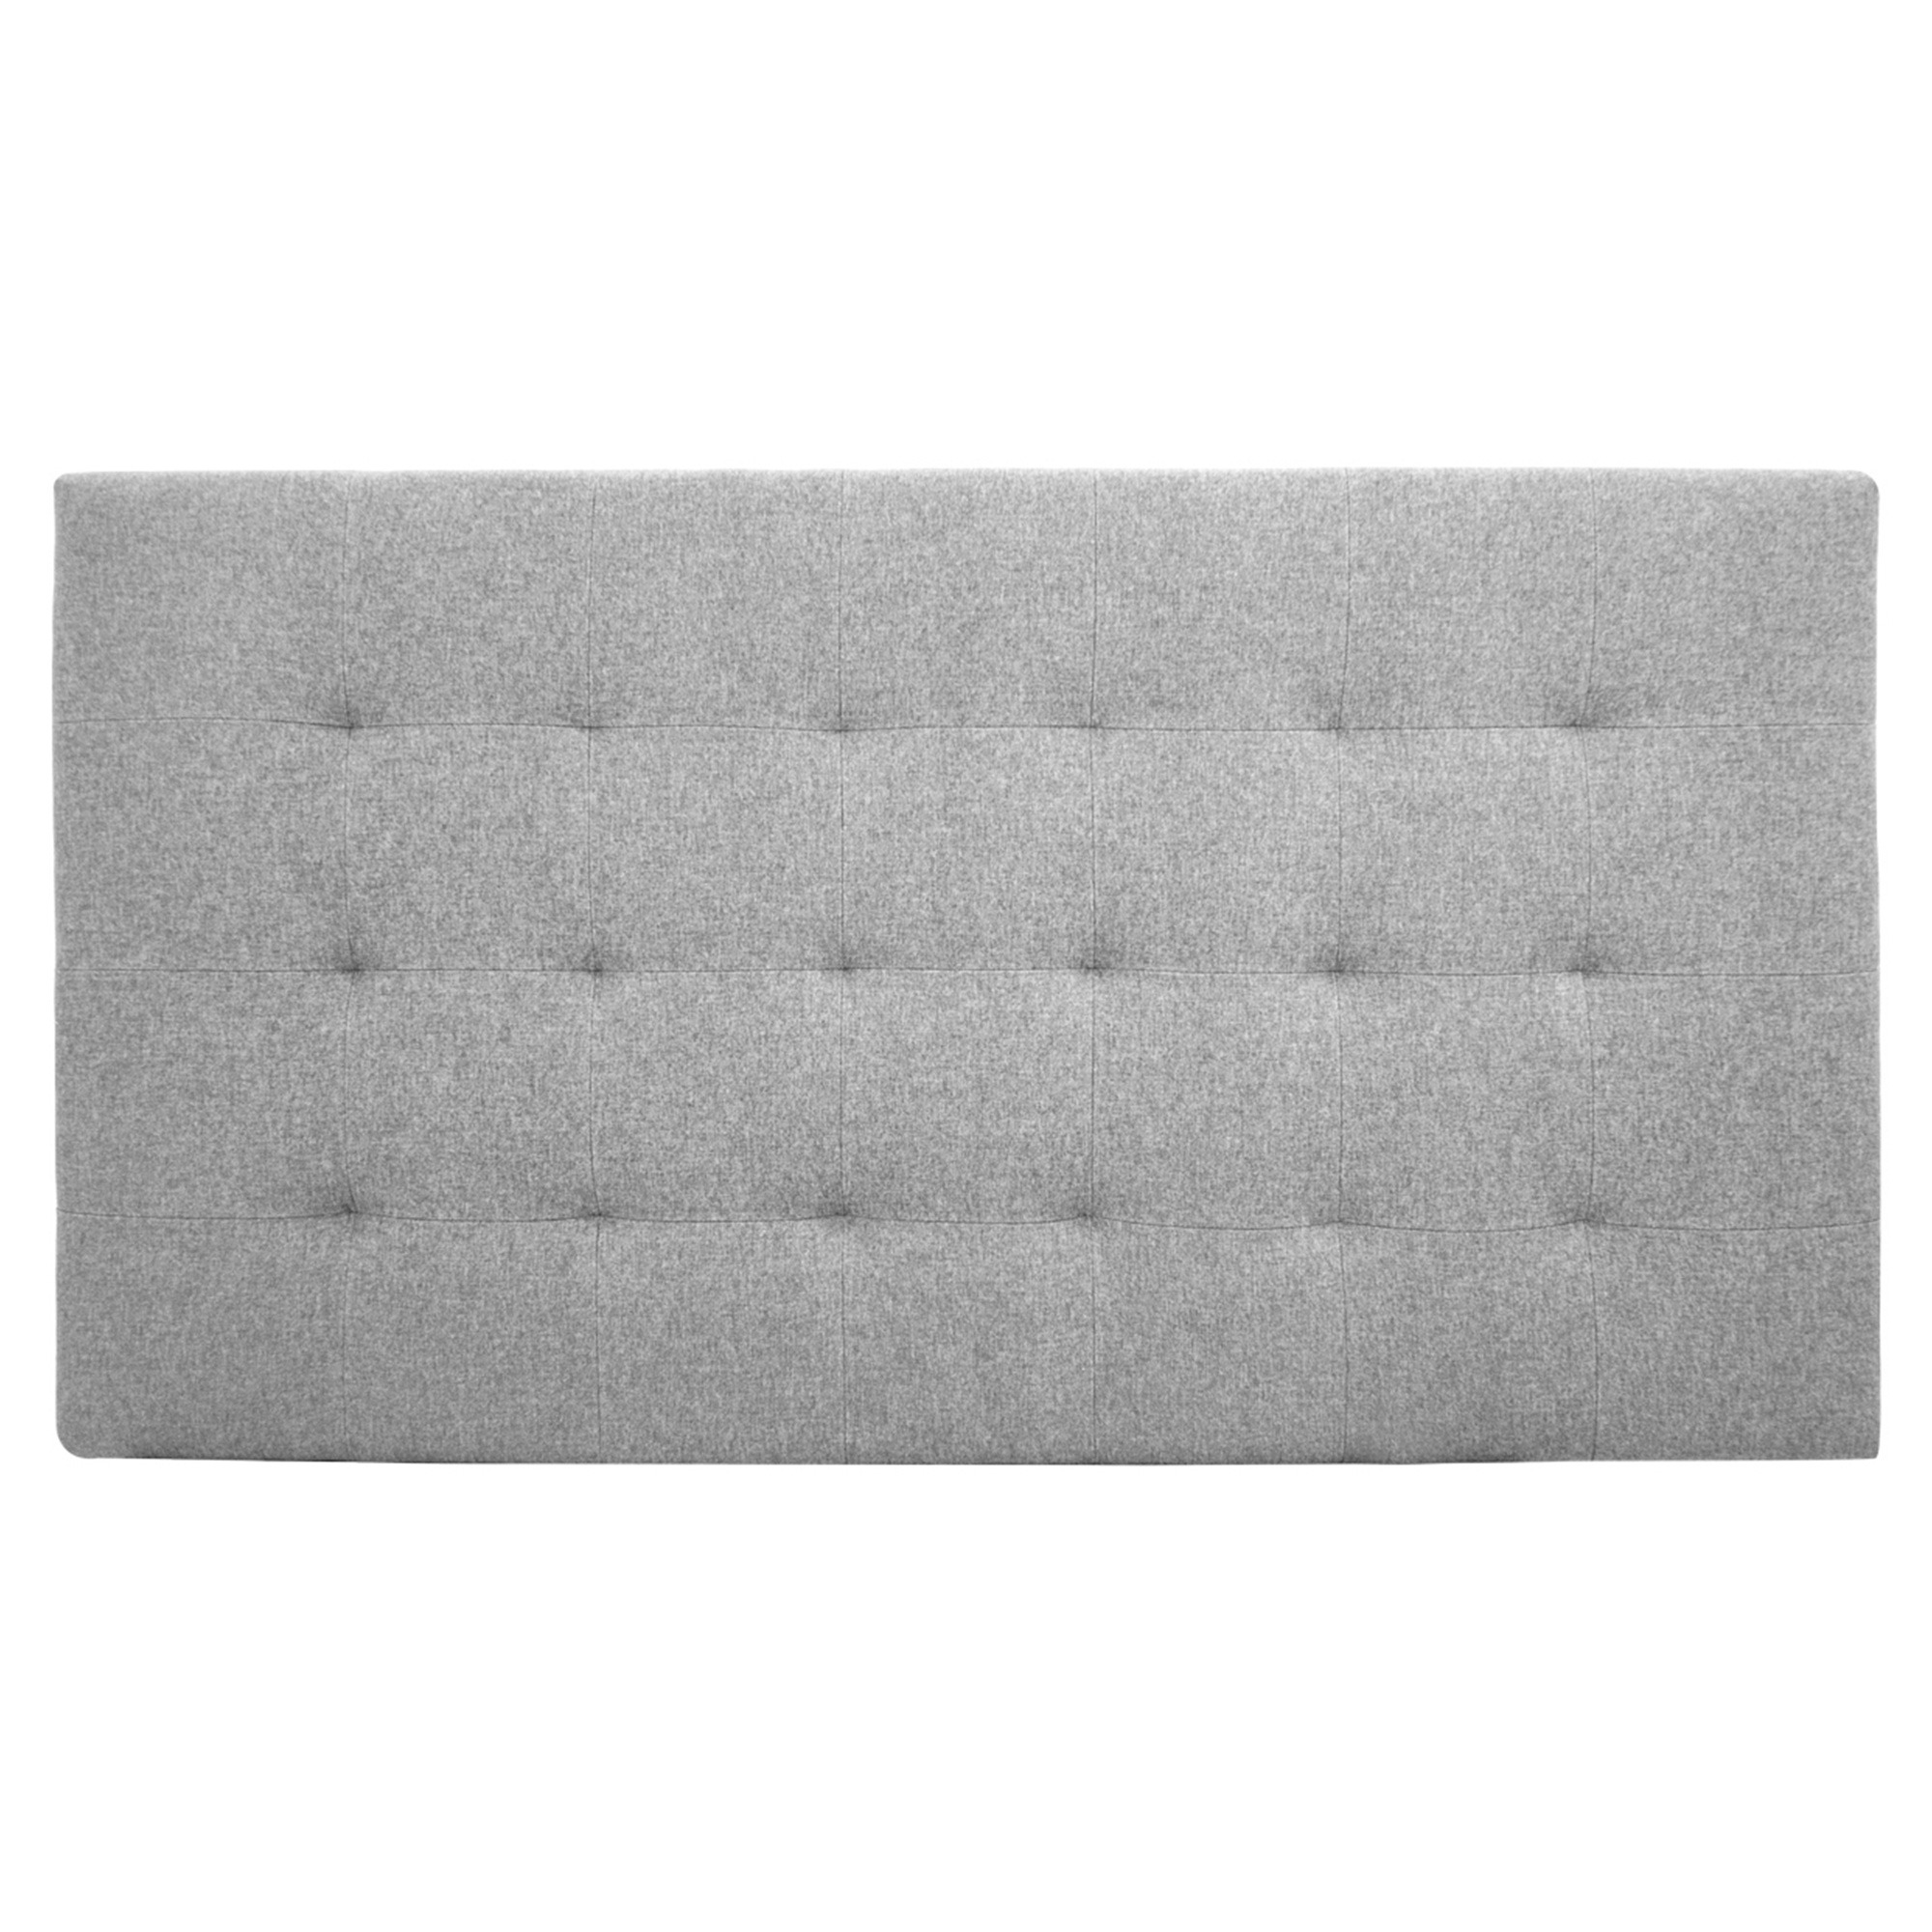 Tête de lit polyester plis couleur grise 180x80cm